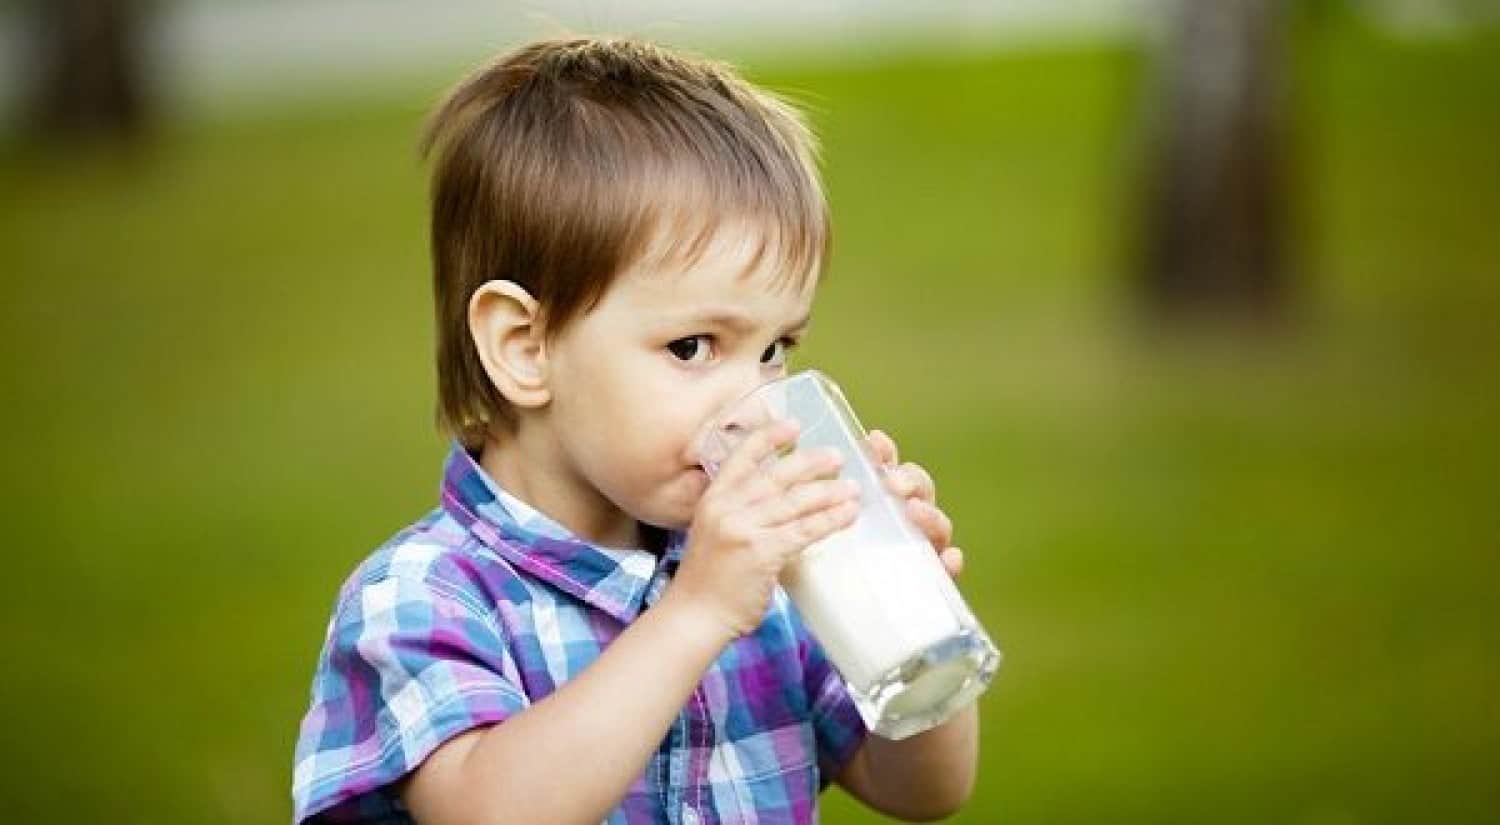 كيف تقنعون طفلكم بشرب الحليب؟